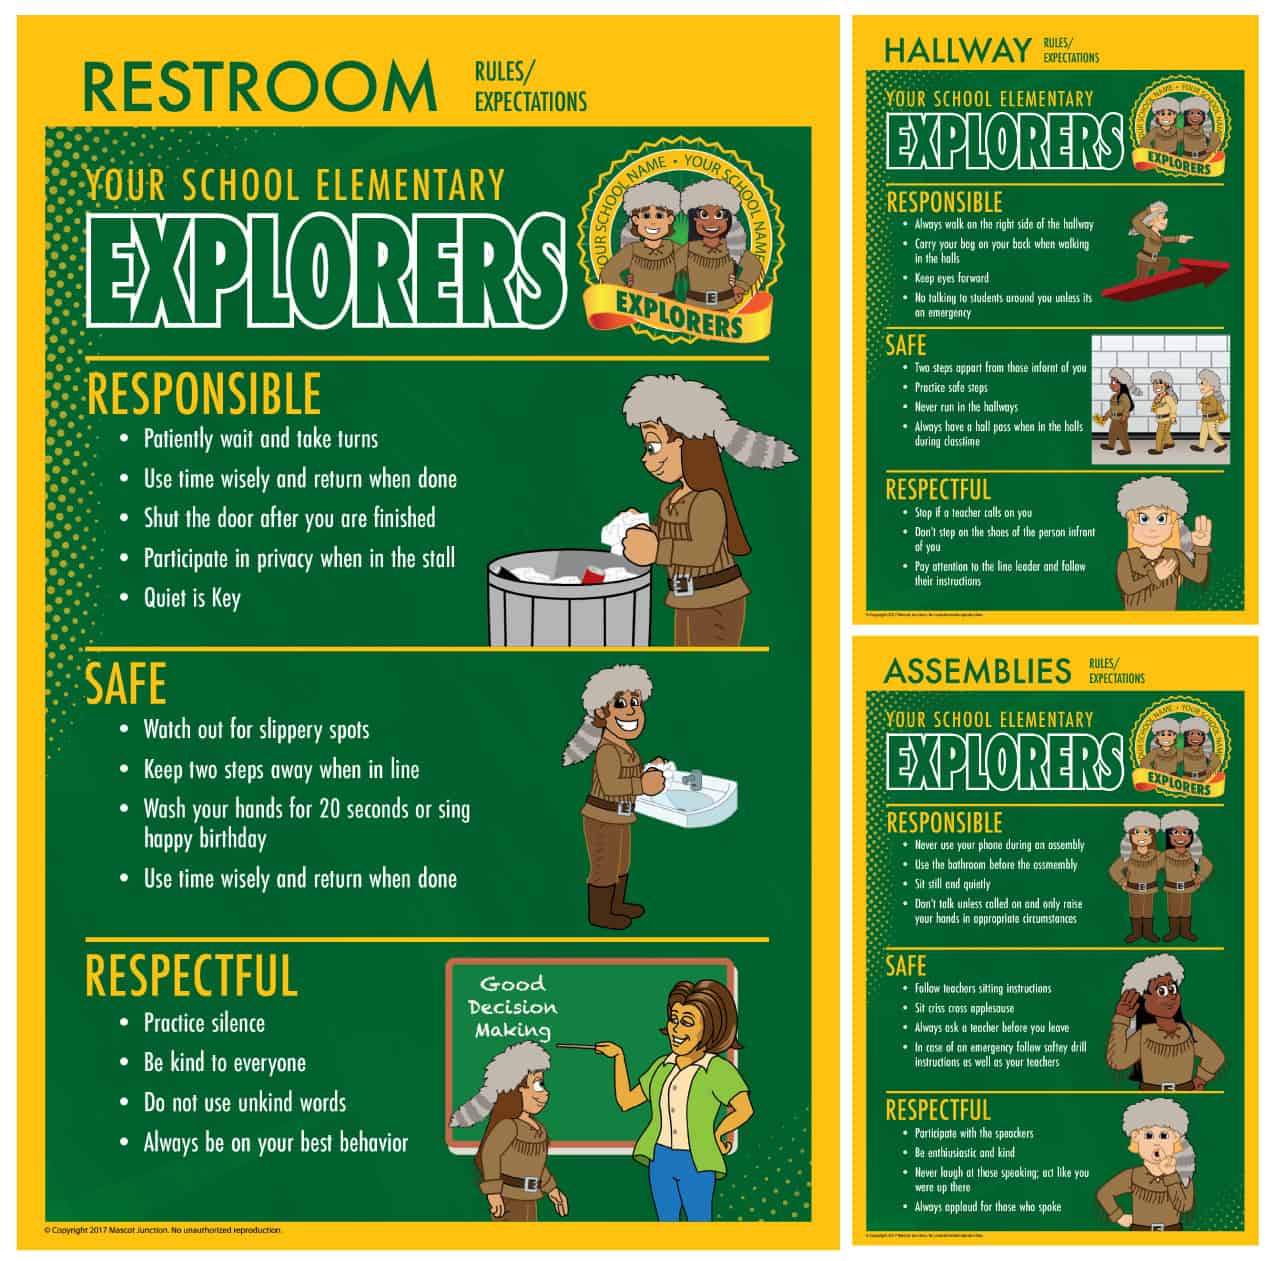 Rules-posters_explorer-Pioneer